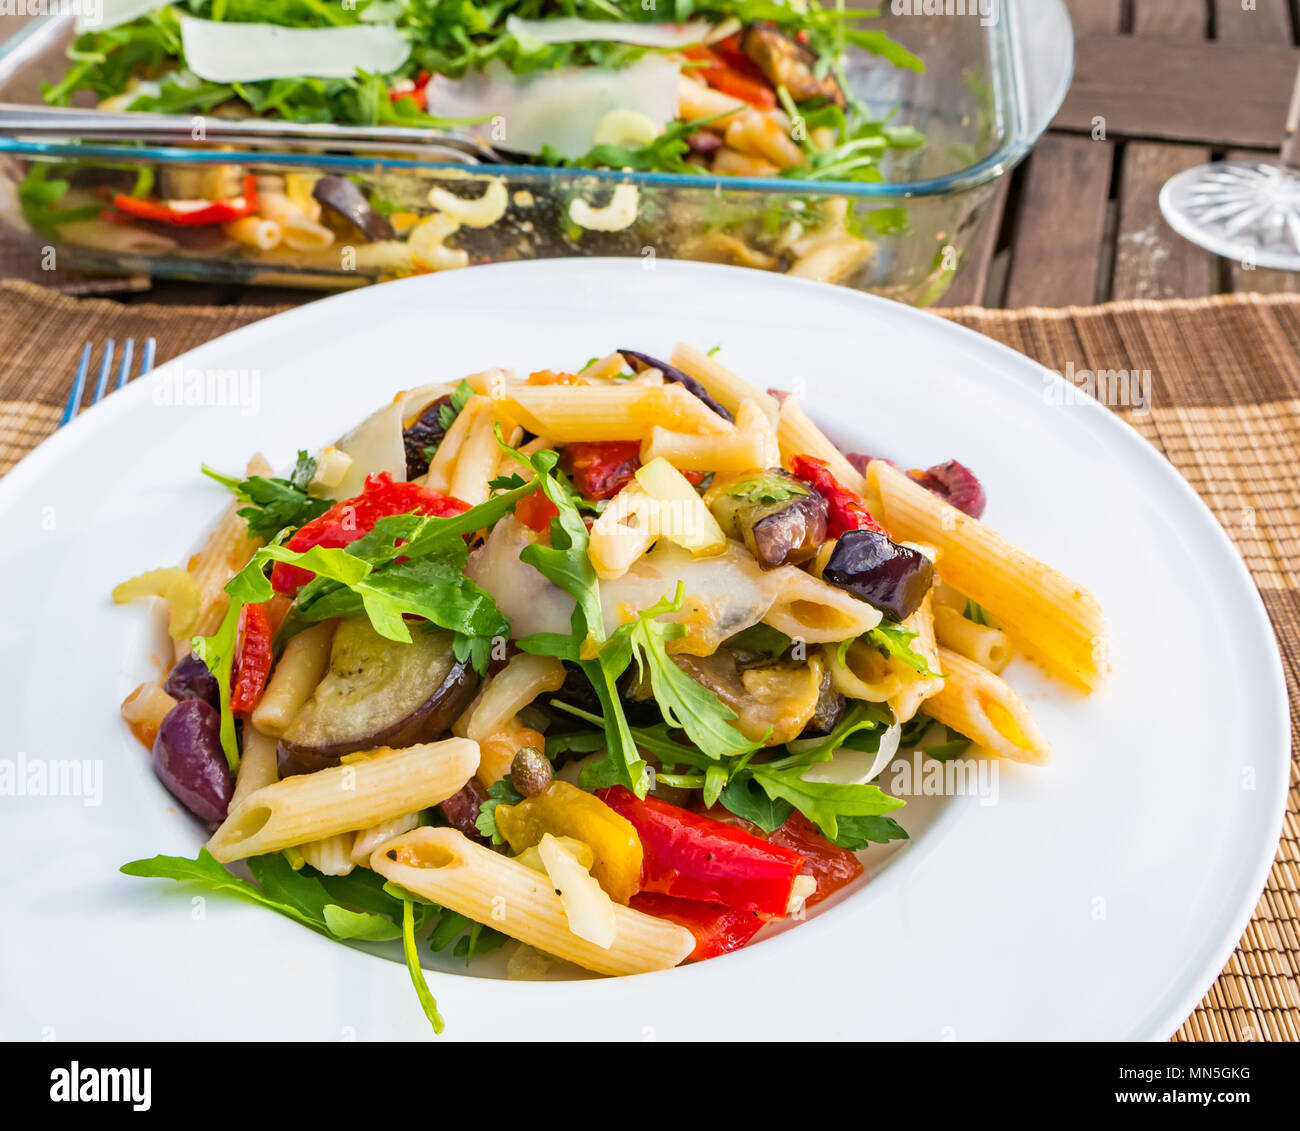 Tisch im Freien mit Pasta Salat serviert auf einem weissen Teller, crystal Weingläser und eine Flasche kühlen Weißwein Stockfoto